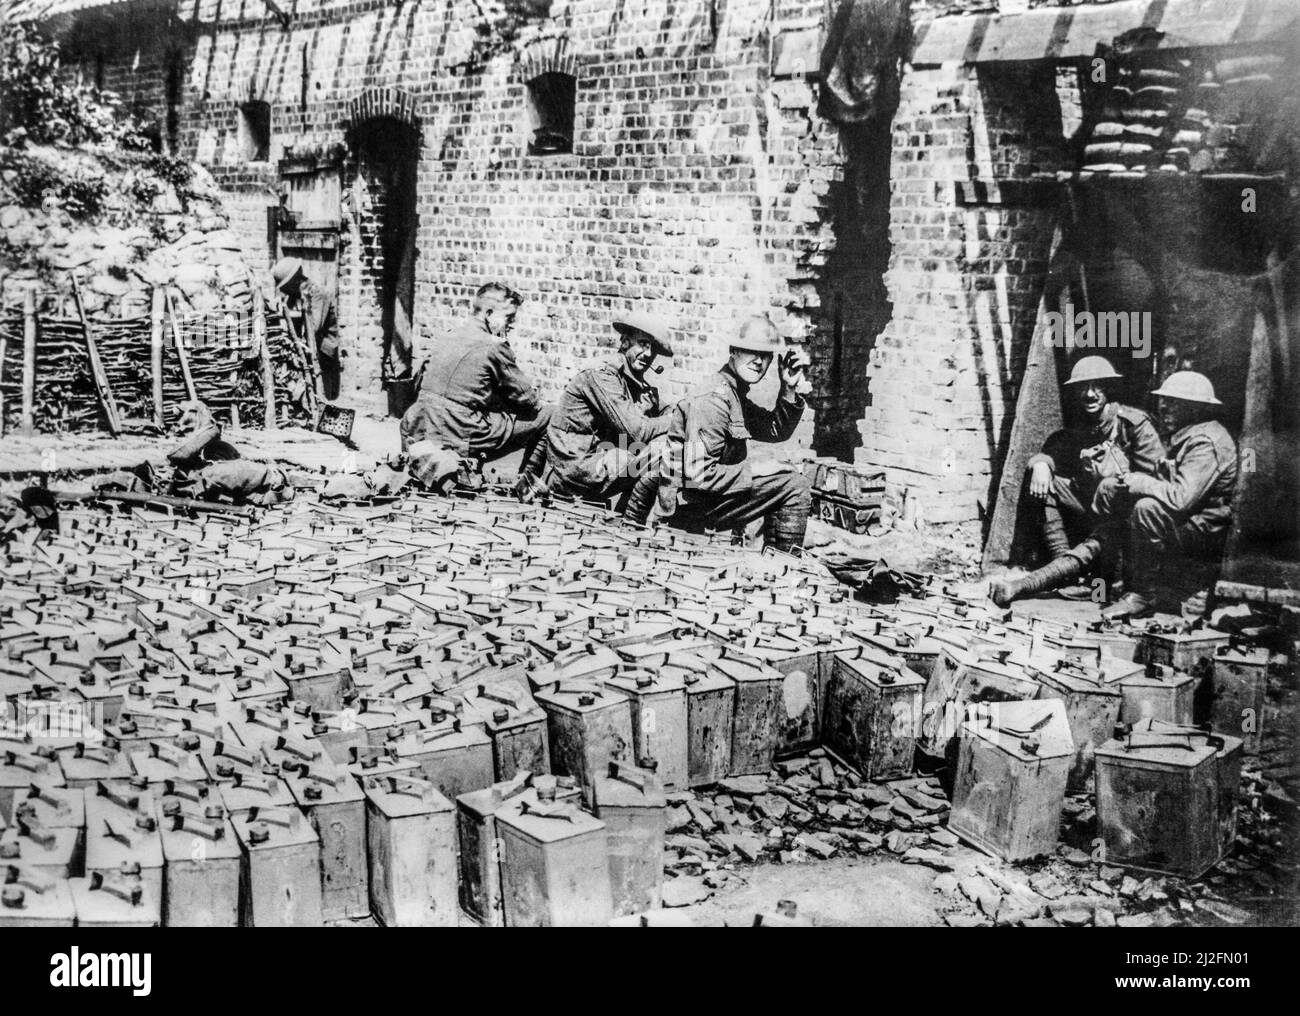 Soldati britannici della prima Guerra Mondiale con jerrycans a discarica di stagno a benzina ad Elverdinghe, Fiandre Occidentali, Belgio nel 1917 durante la prima Guerra Mondiale Foto Stock